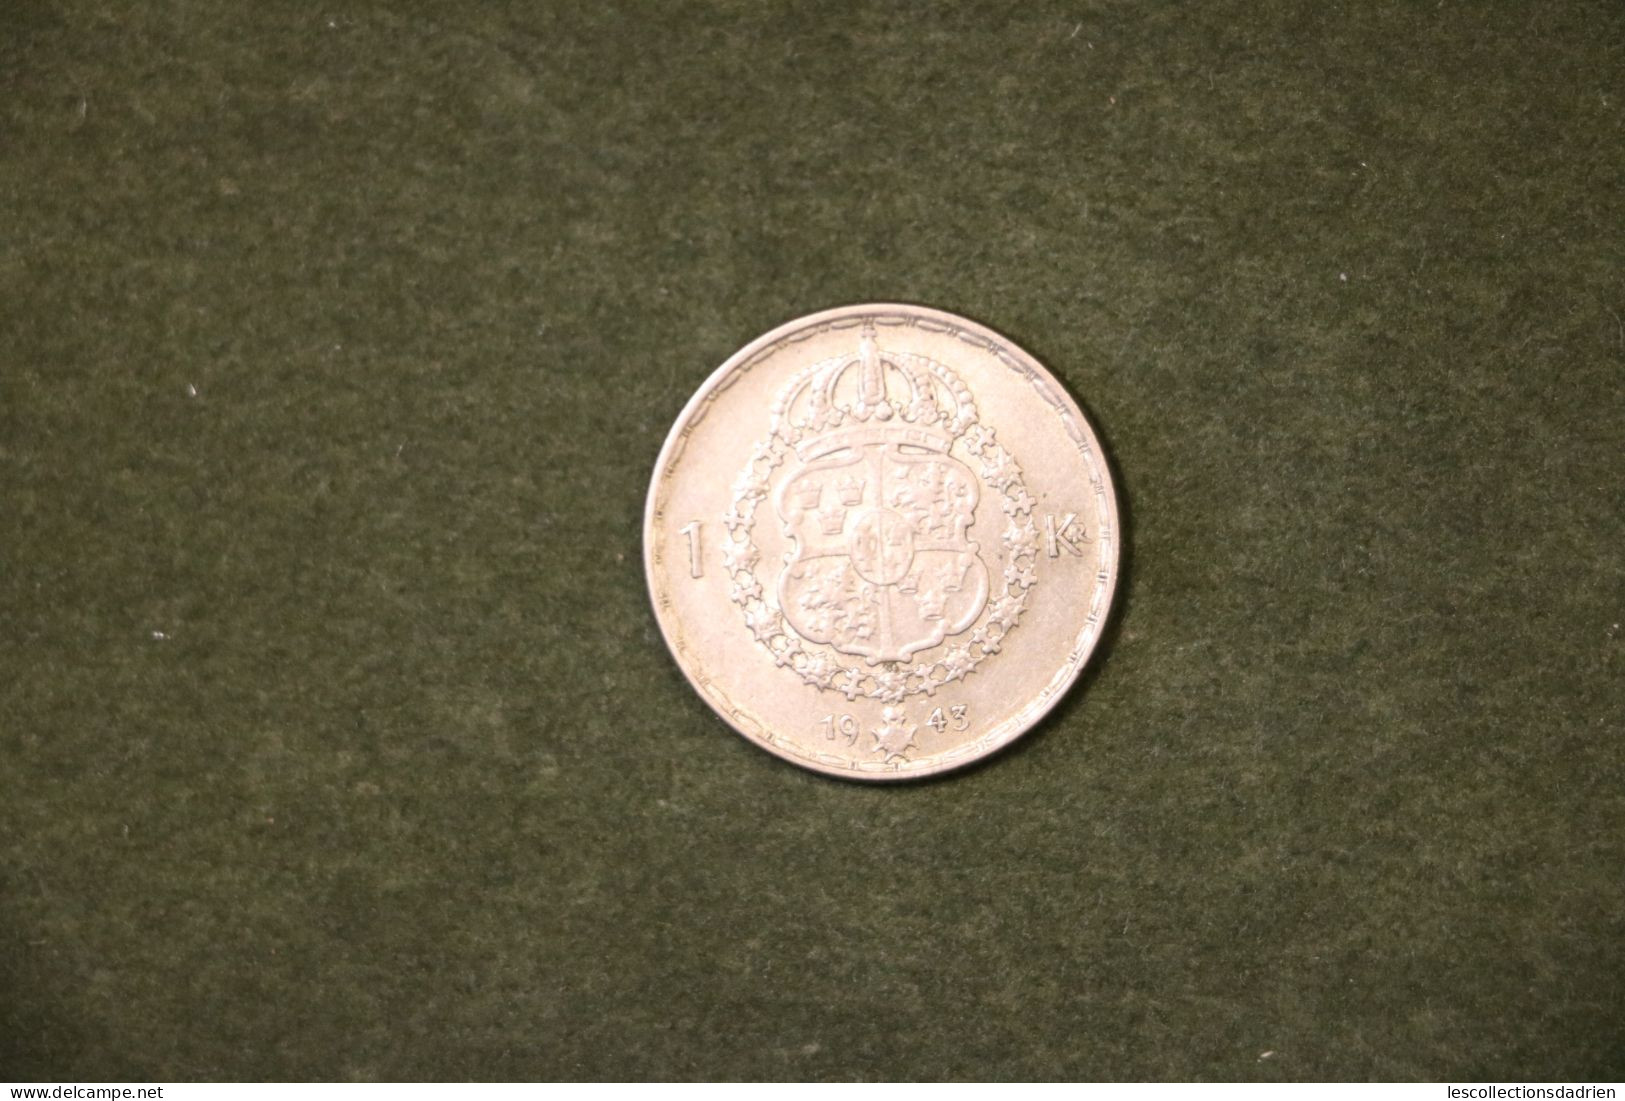 Monnaie Suédoise En Argent 1 Couronne 1943 -  Swedish Silver Coin - Suecia